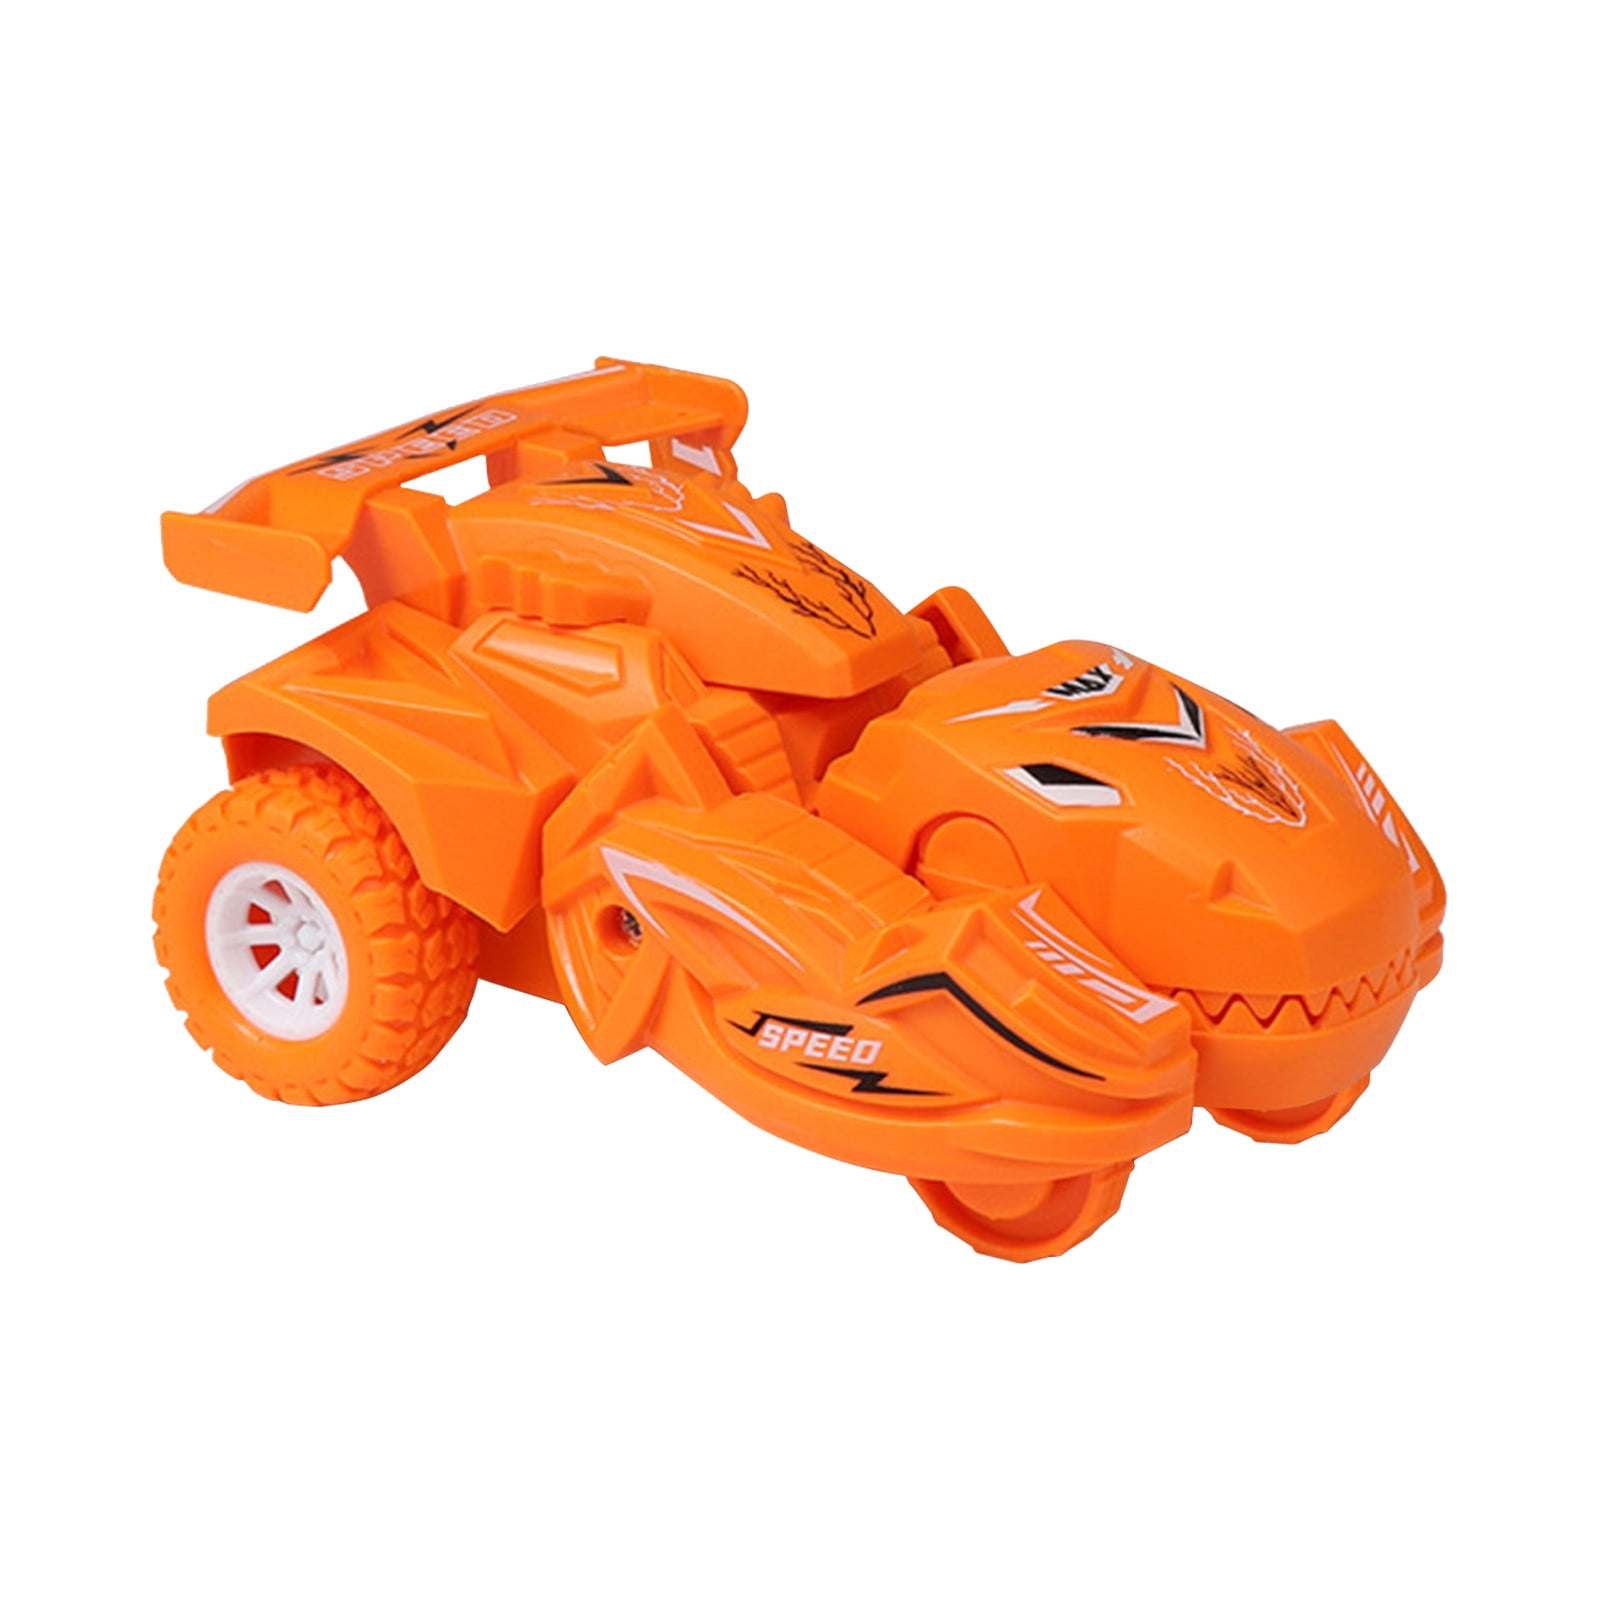 Details about   Hot Wheels Action Race Case One Size Blue/orange